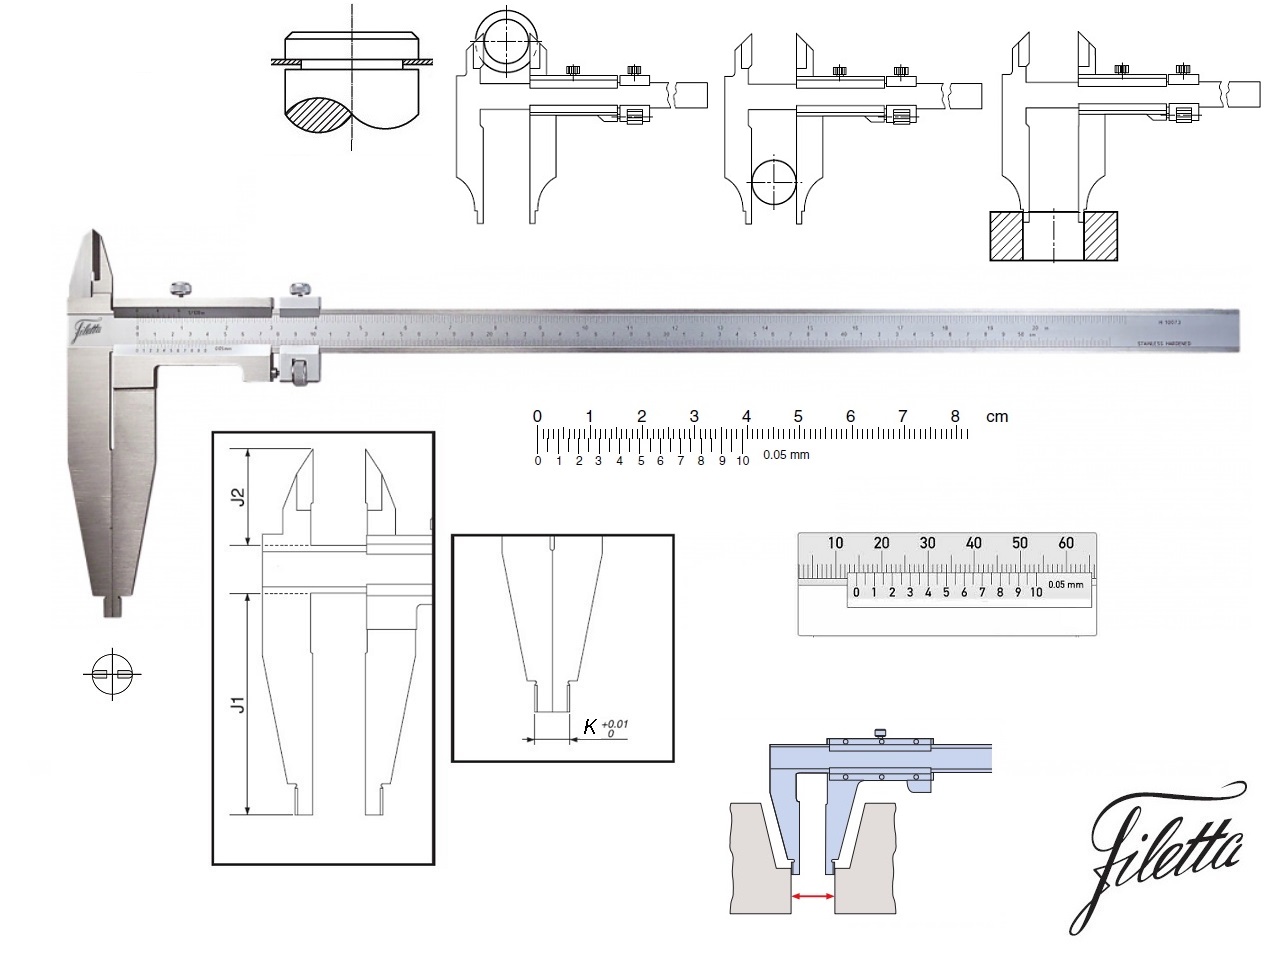 Posuvné měřítko Filetta 0-500/0,05 mm, čelisti 150 mm, s měřicími nožíky pro vnější měření